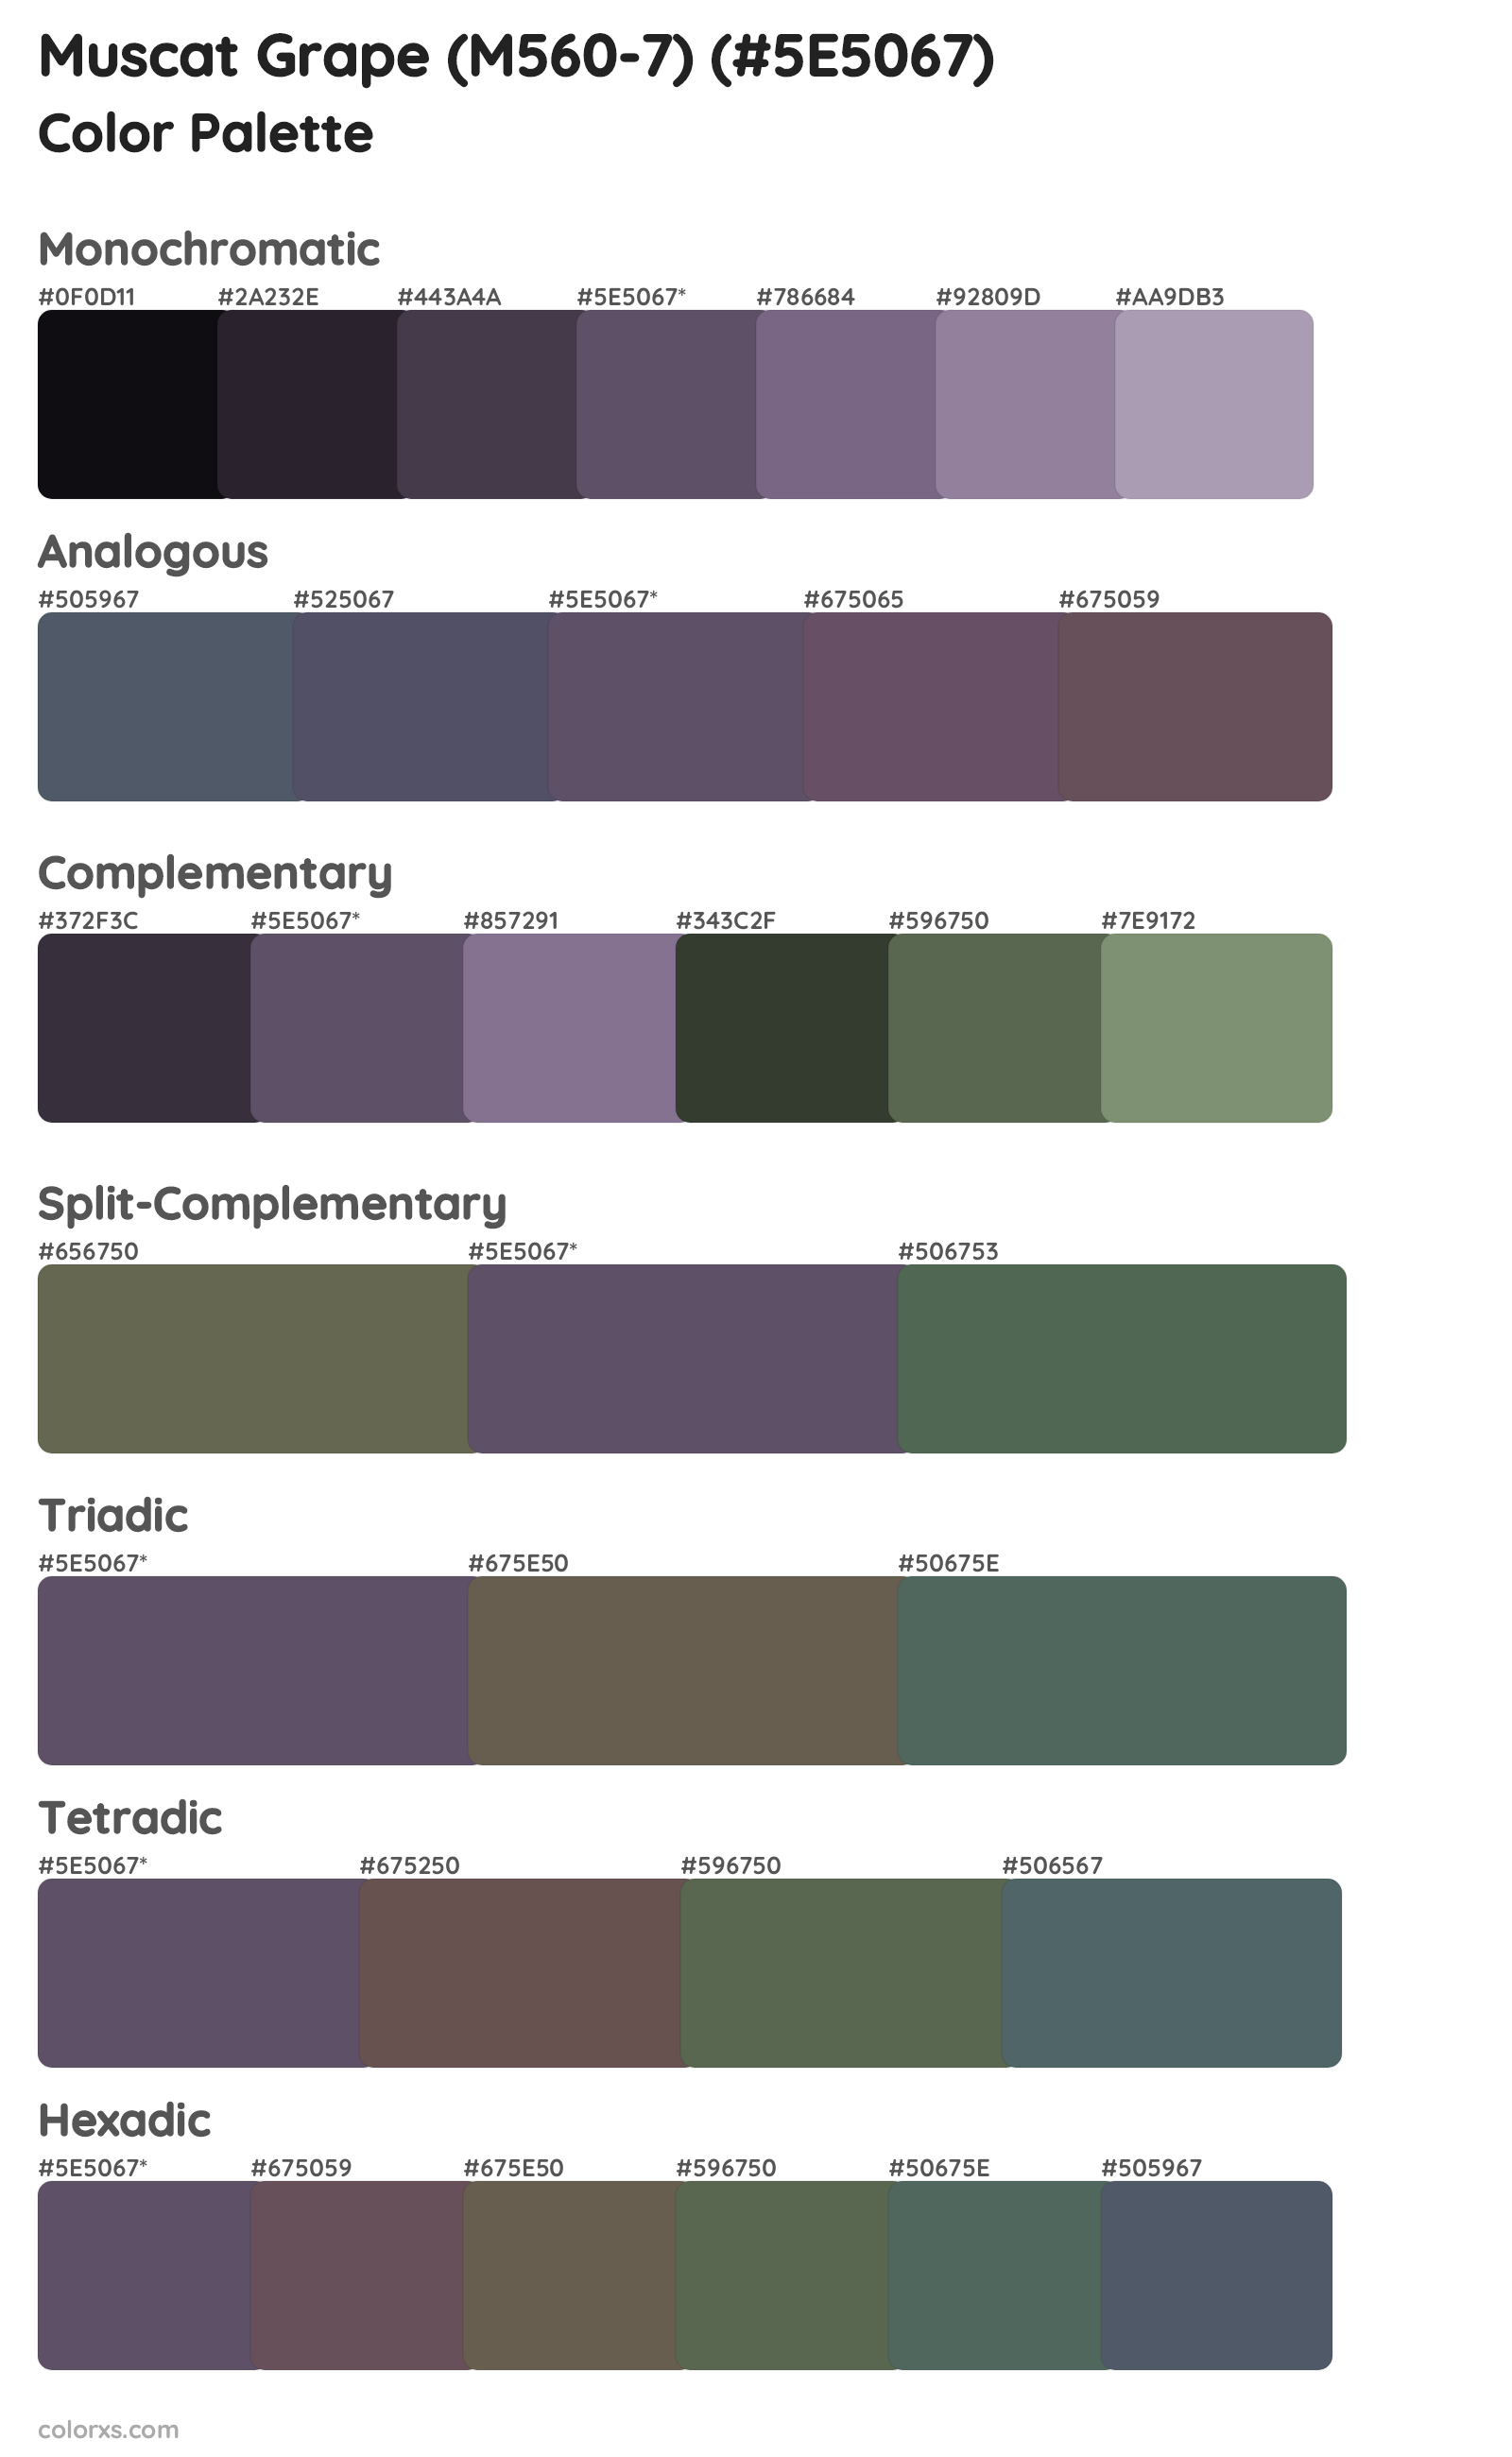 Muscat Grape (M560-7) Color Scheme Palettes